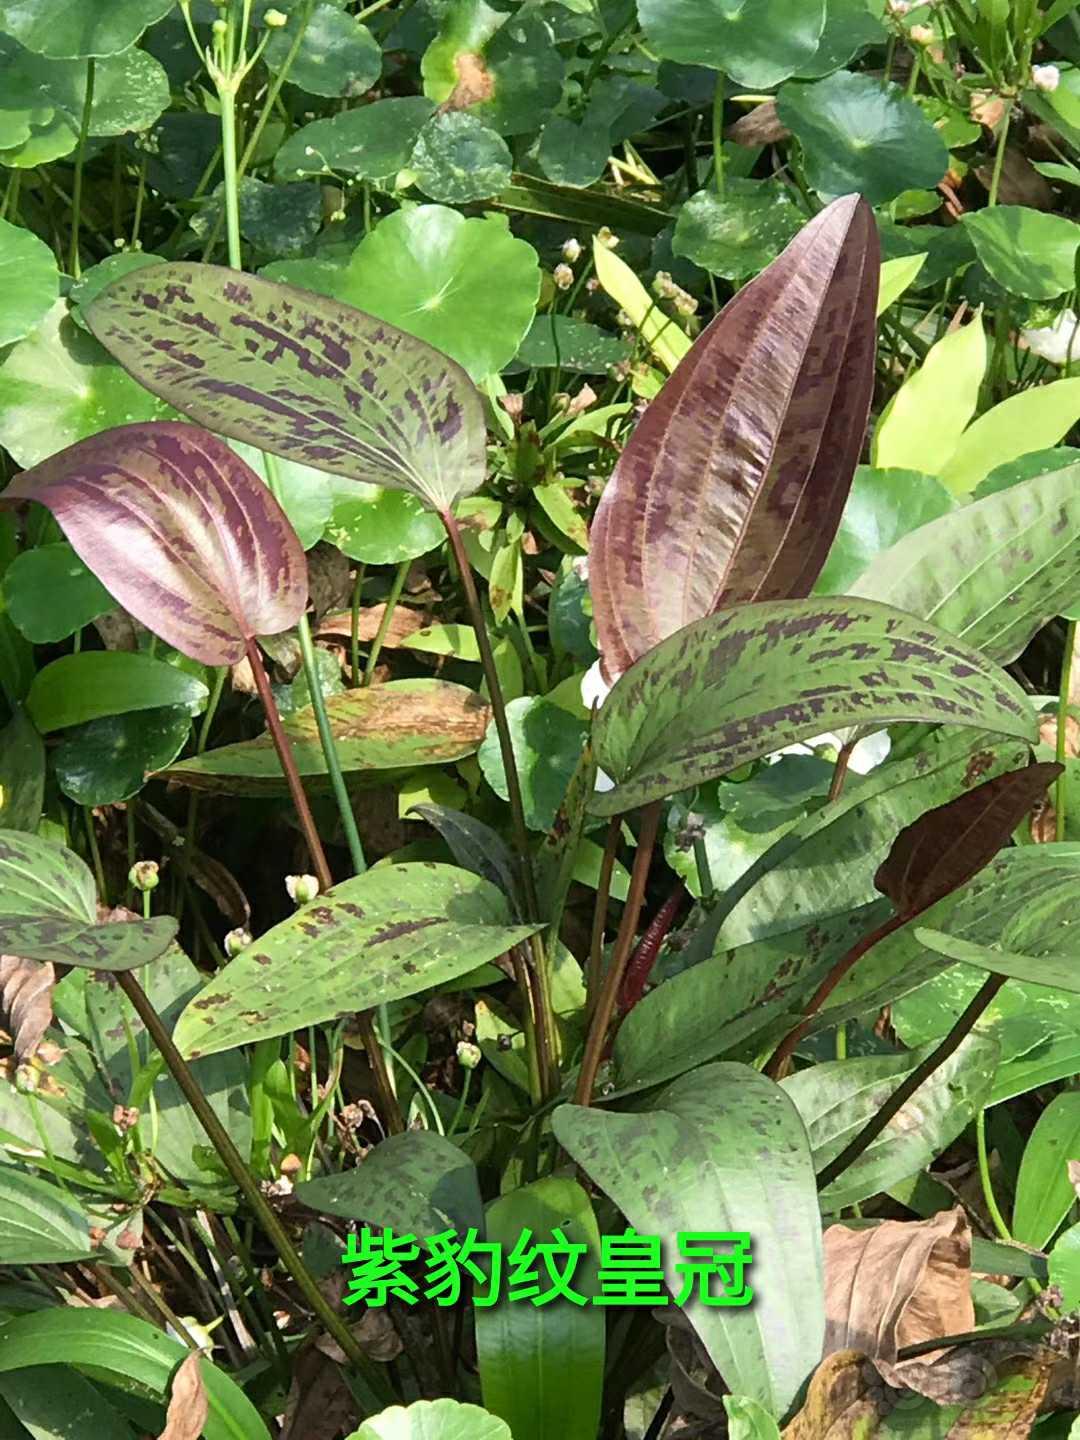 出挺水植物  新旦皇冠   紫皇冠  豹纹皇冠  宽细叶龙鞭  各种睡莲  和阴性草-图5